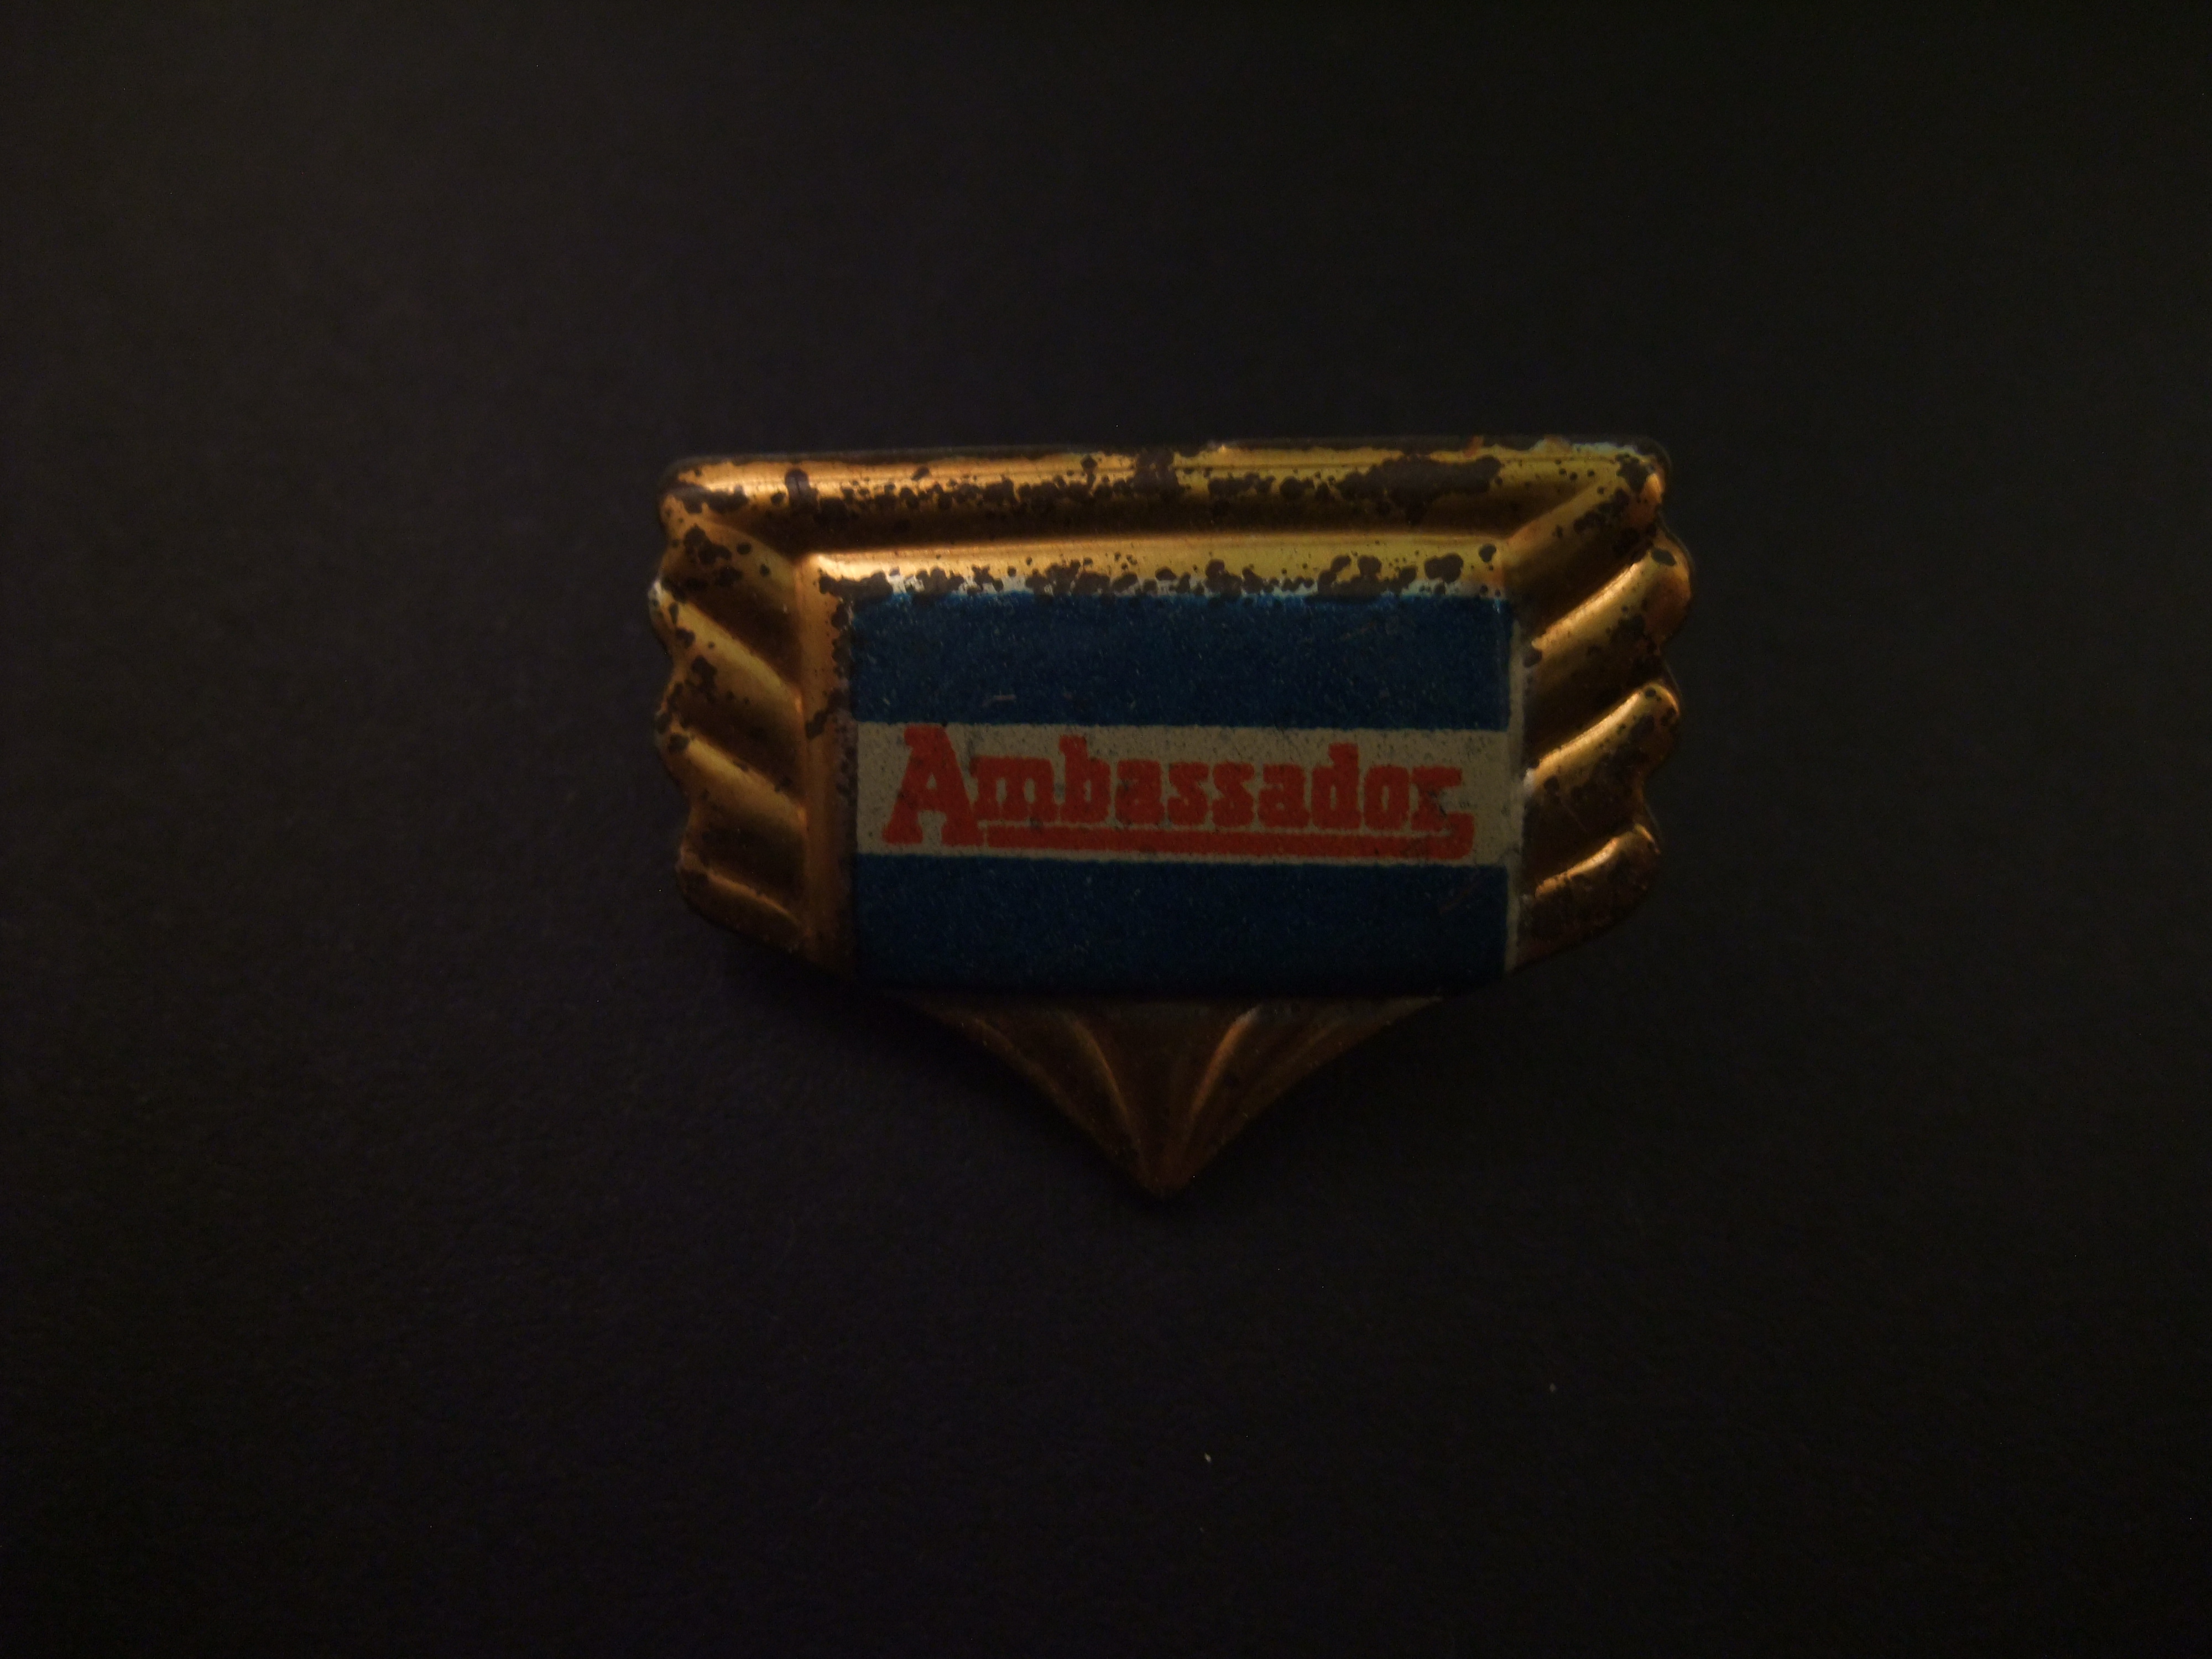 Ambassador Brits motormerk logo